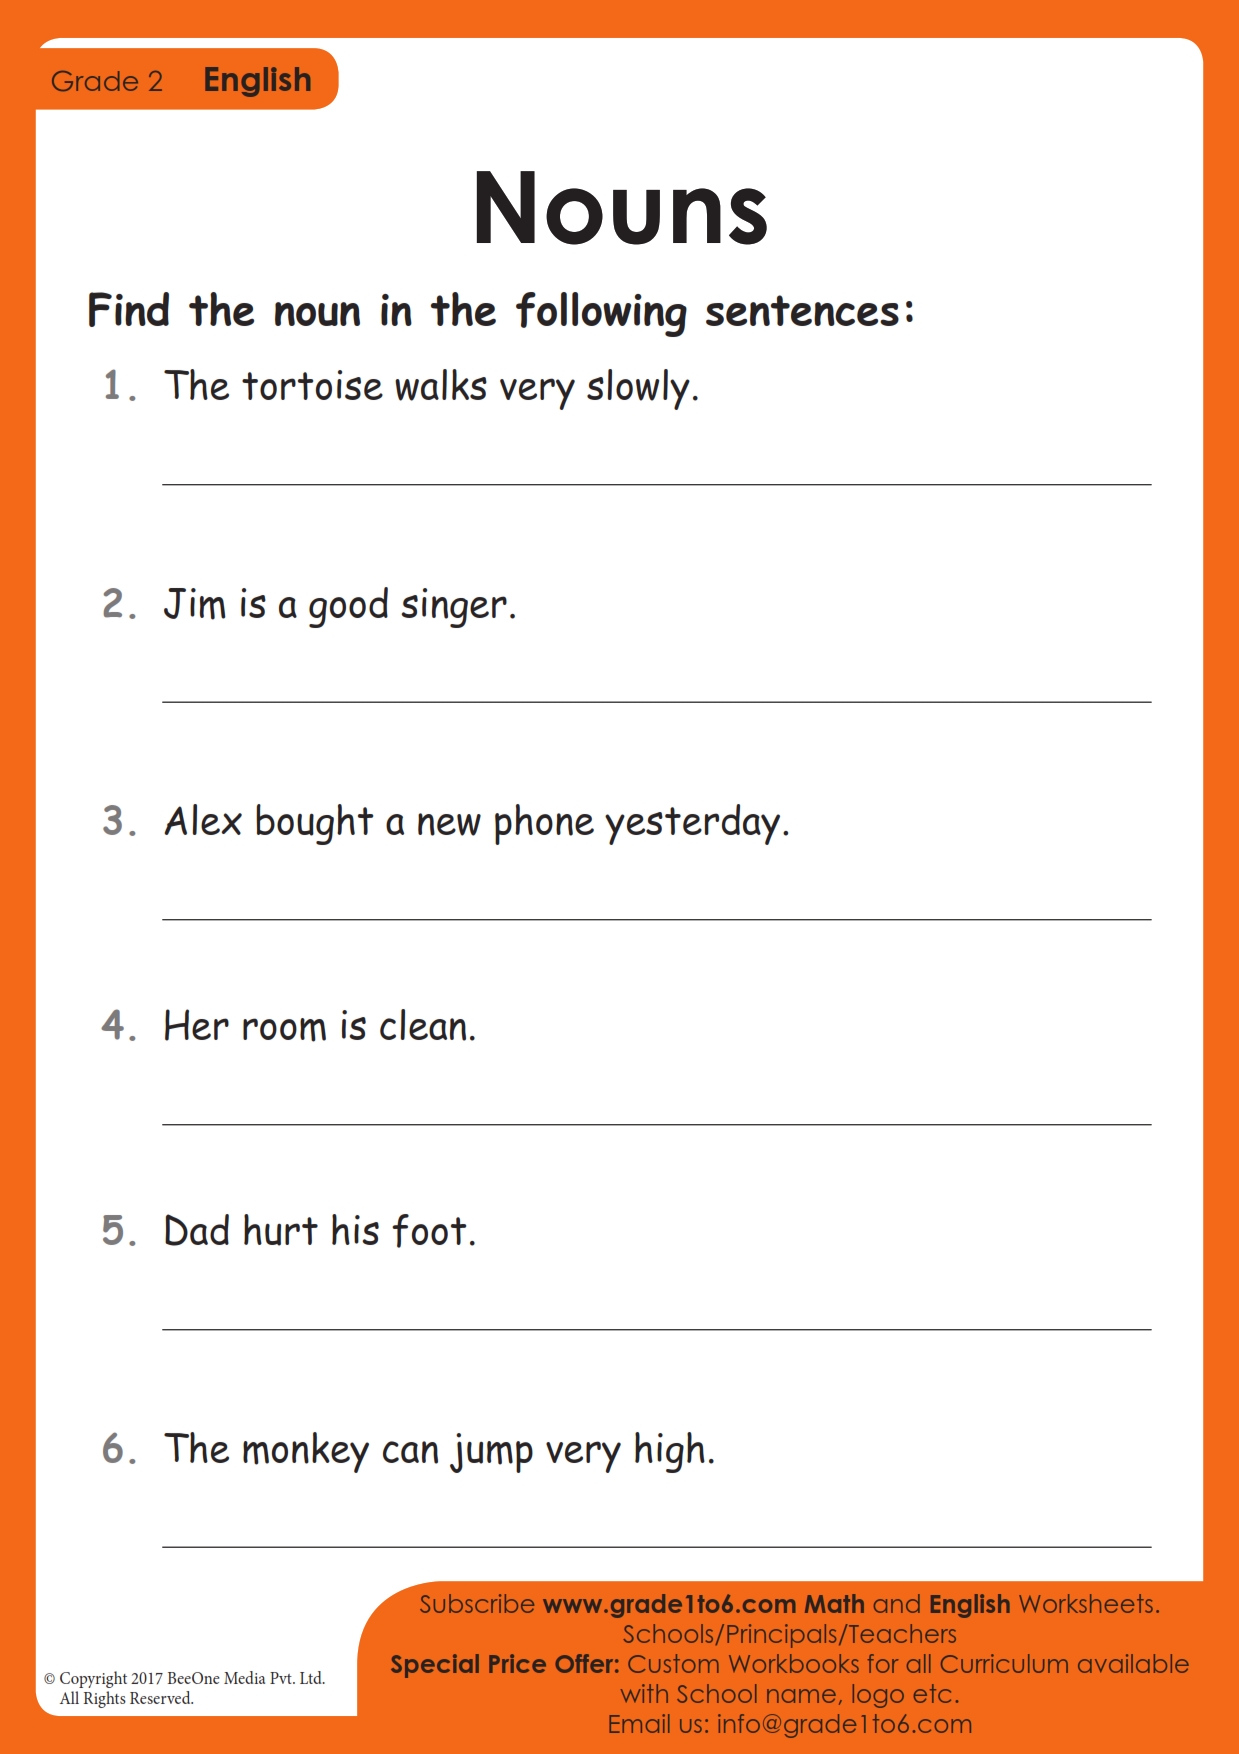 identifying-nouns-in-sentences-worksheet-grade1to6